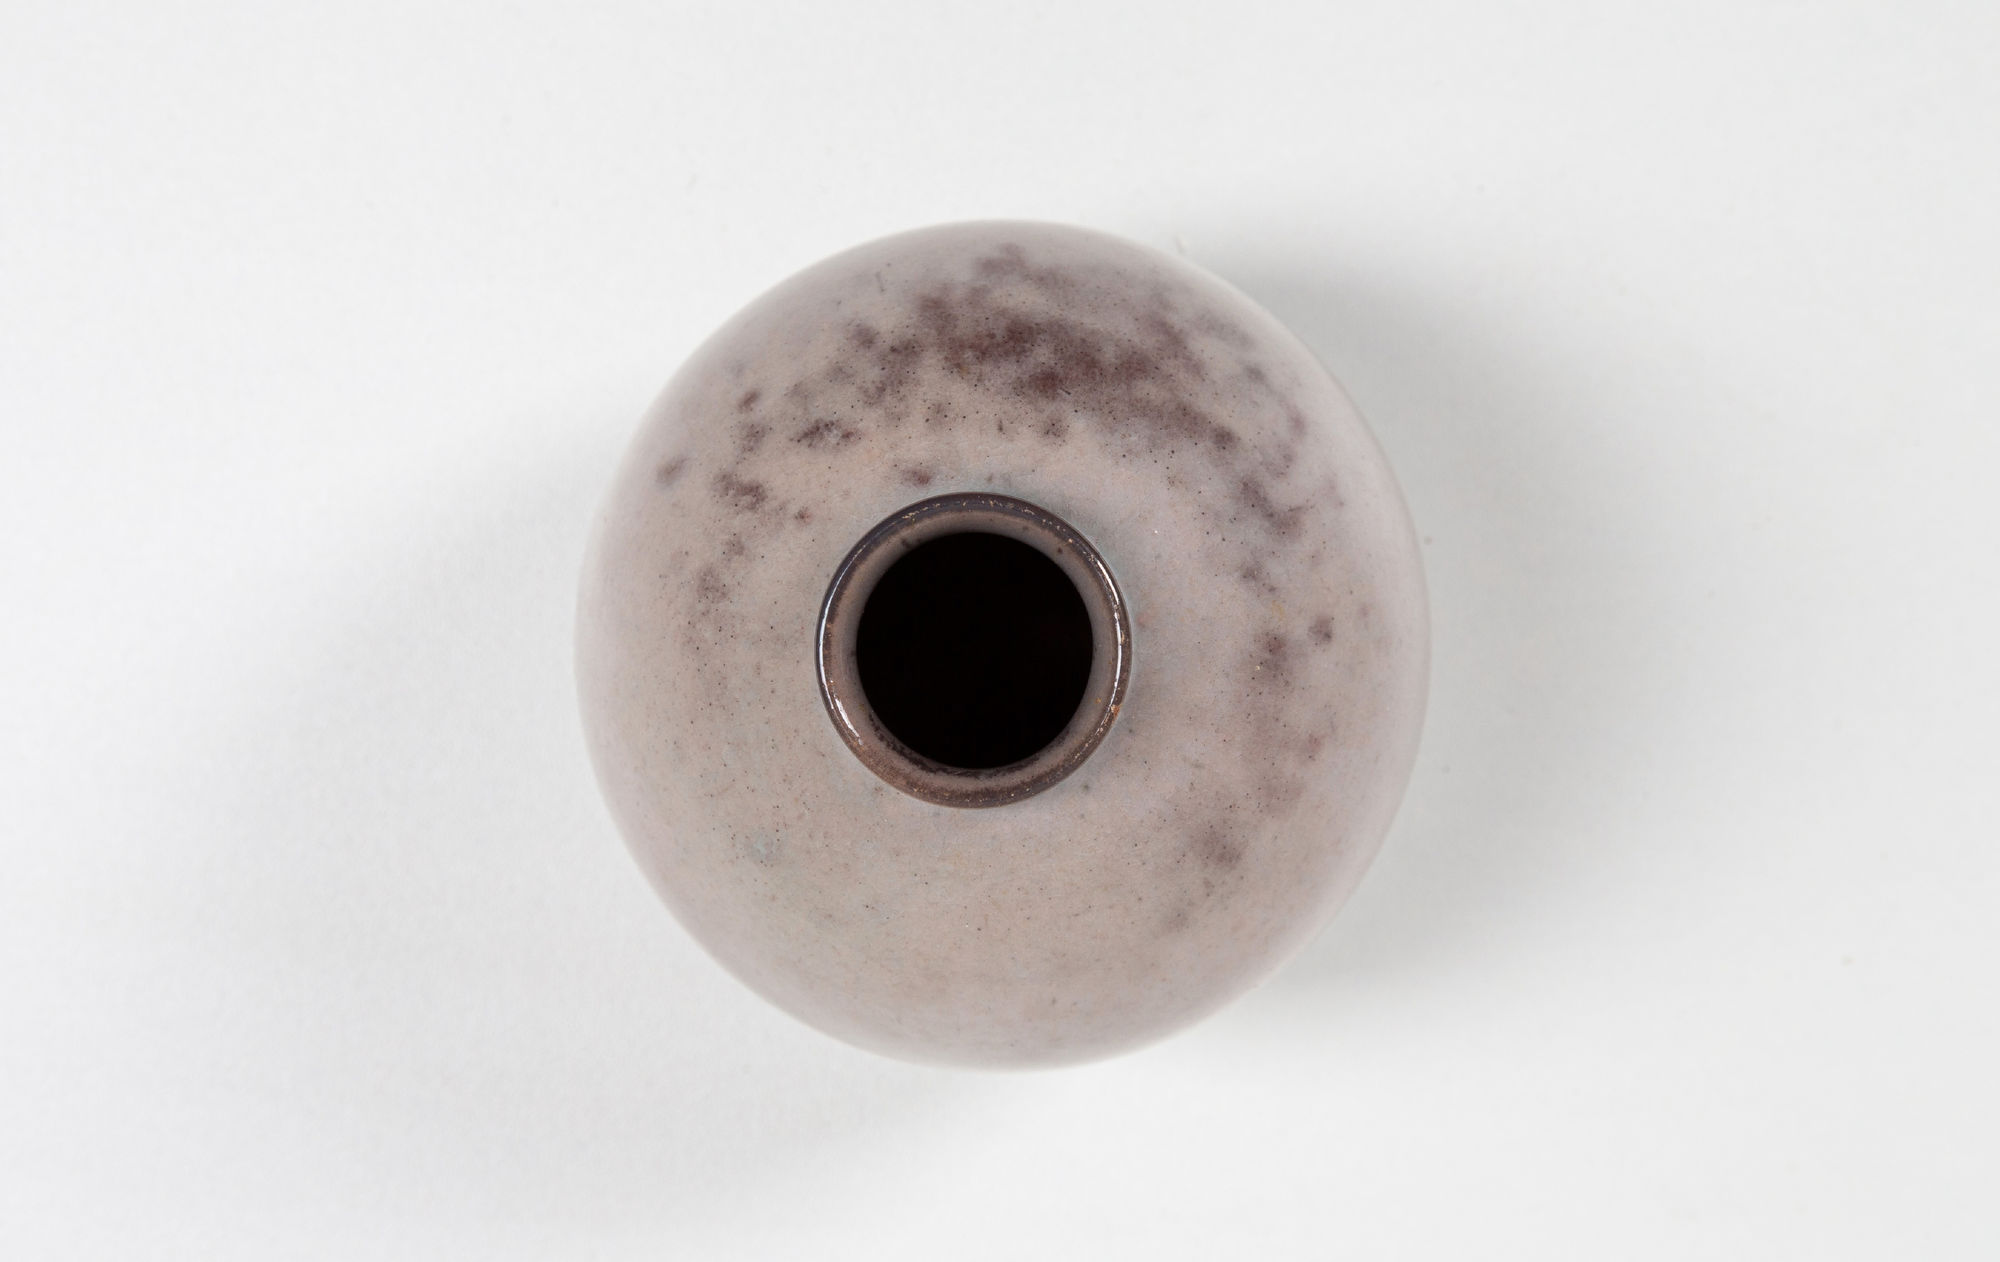 Fritz Haussmann Ceramic vase